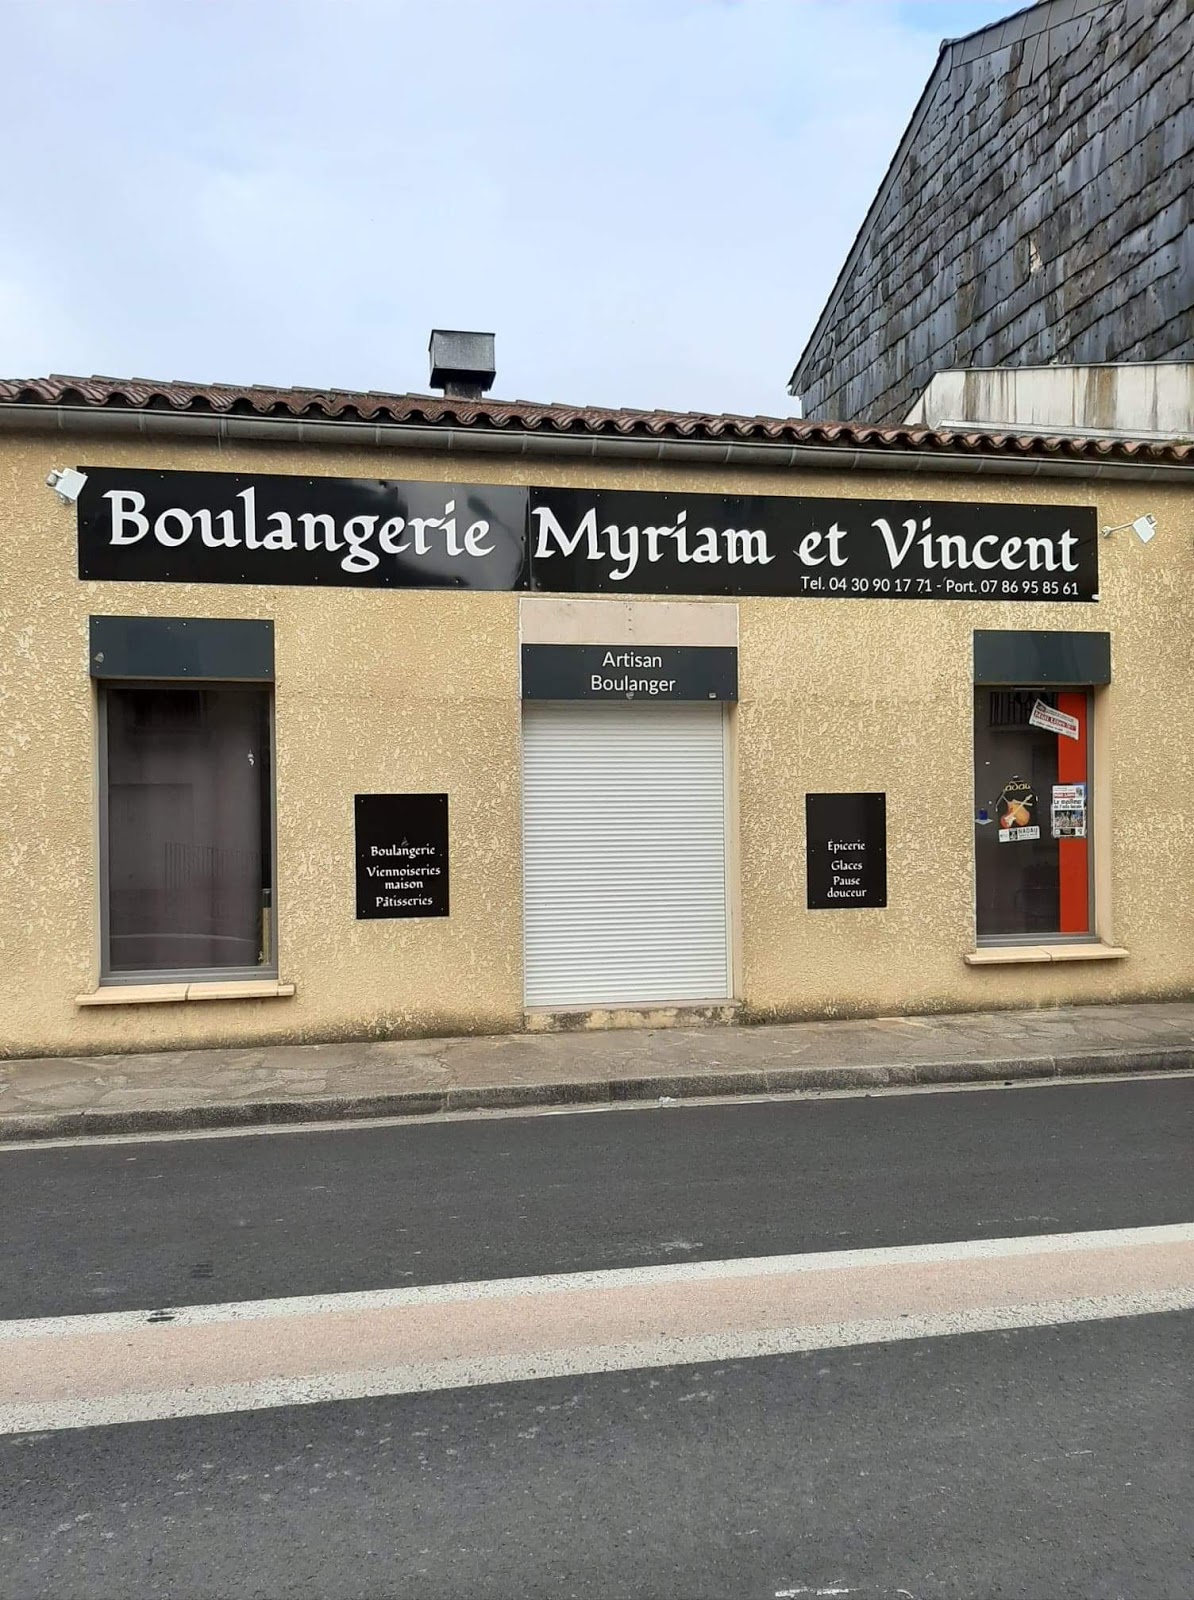 Boulangerie Myriam et Vincent